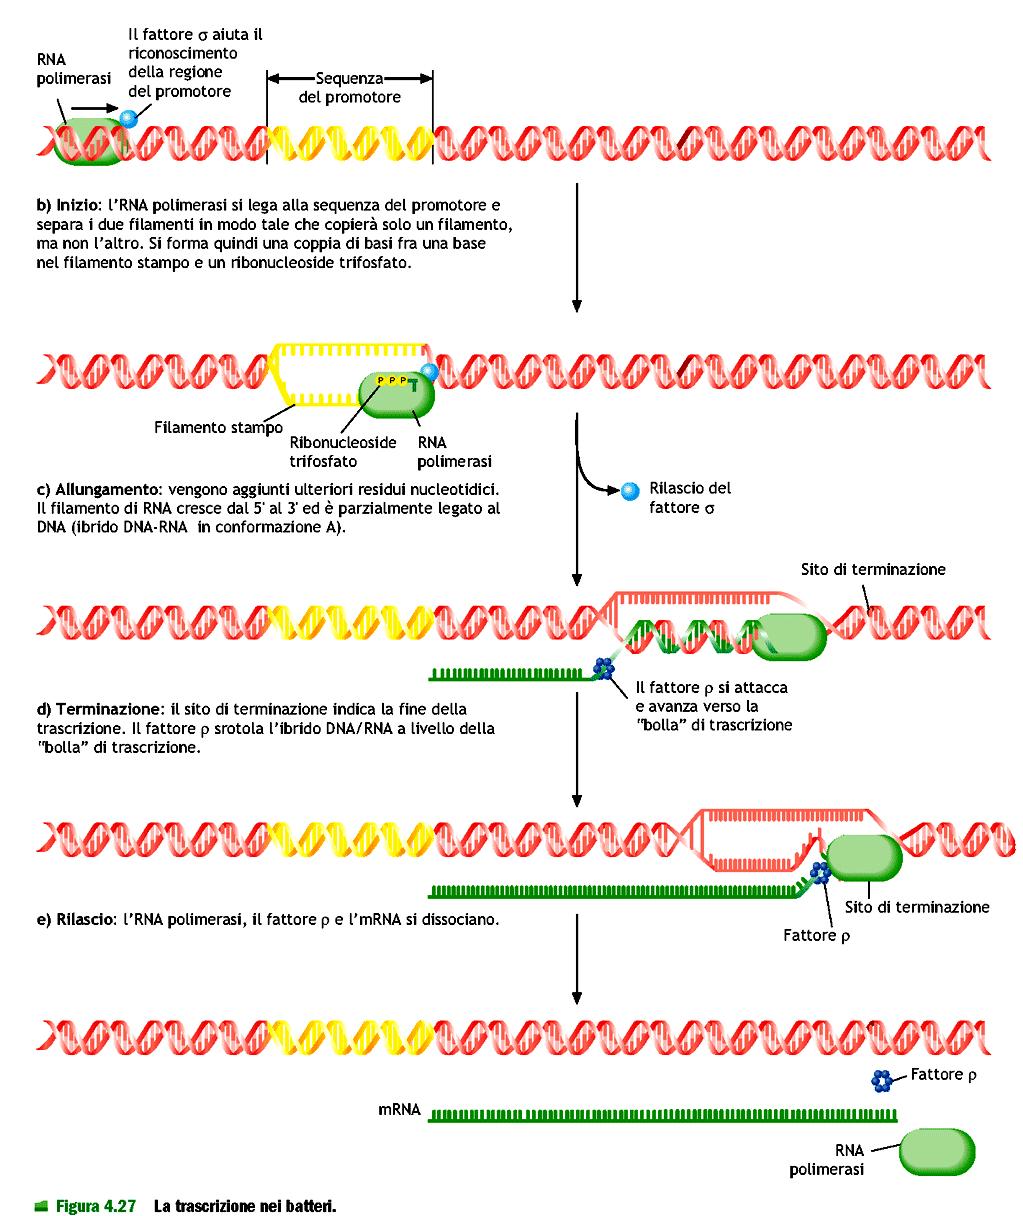 La terminazione della trascrizione : implica il distacco delle catena di RNA dovuto a una certa struttura